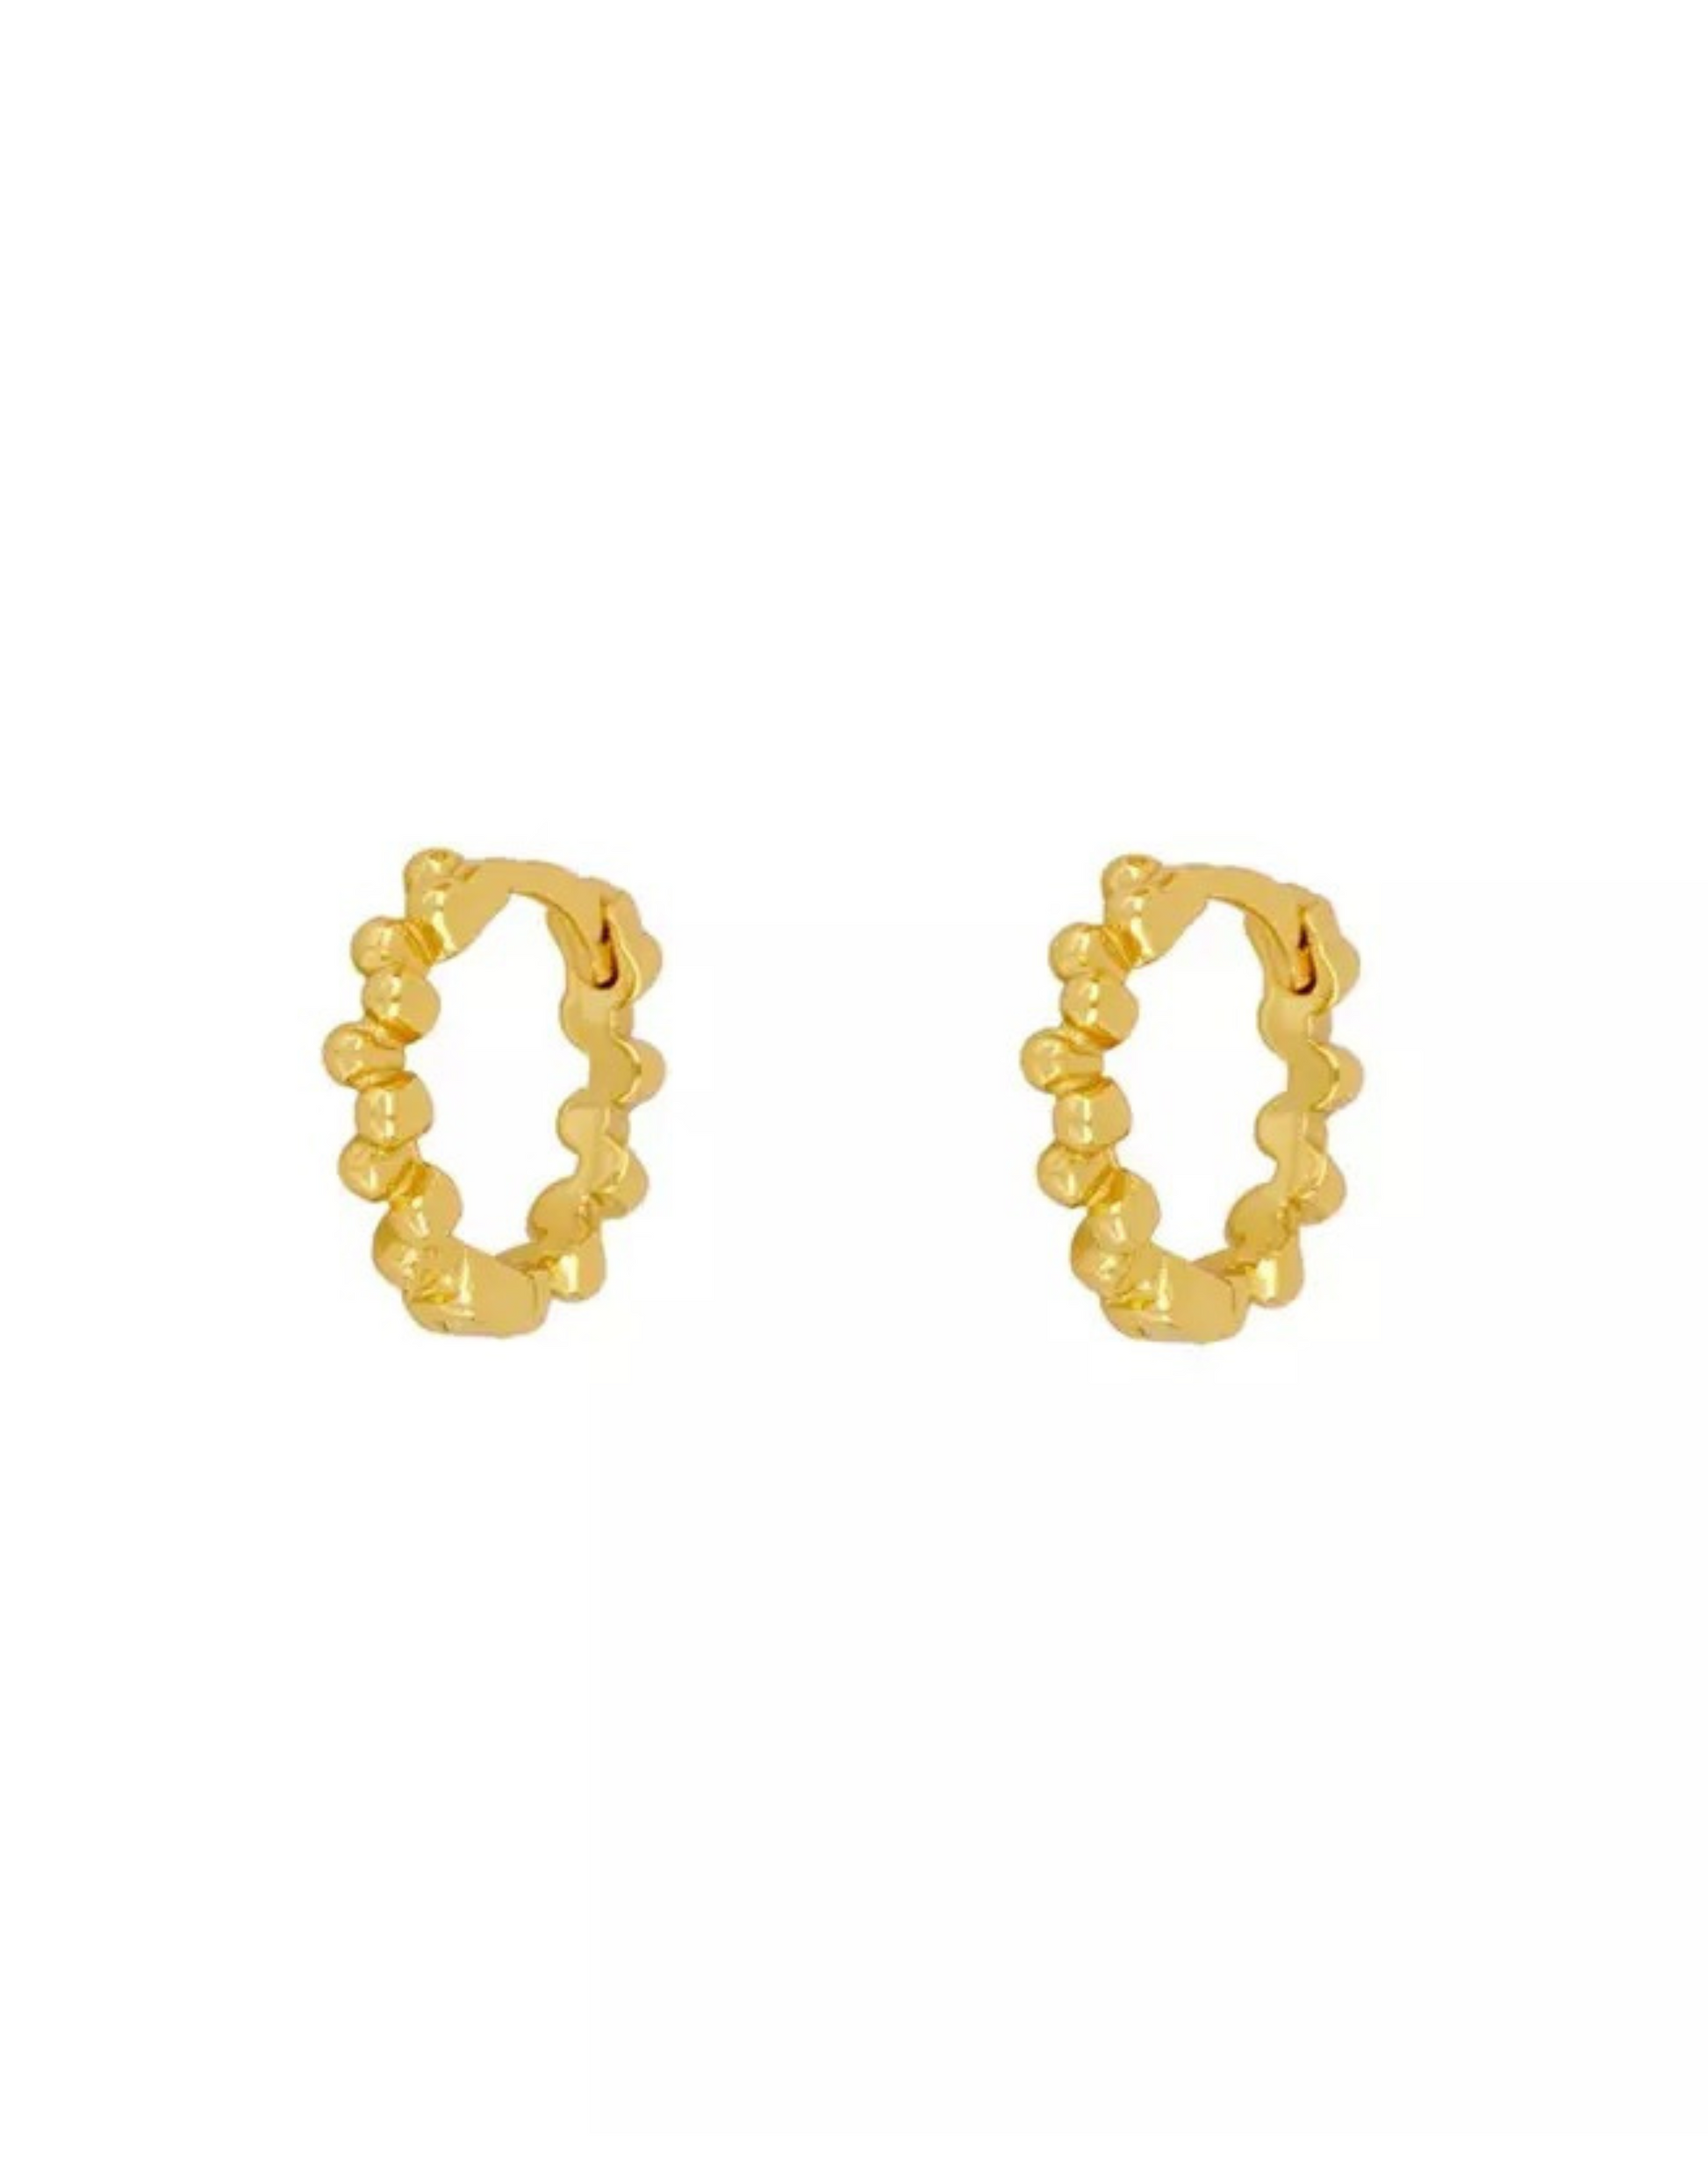 Elina hoops i guld i mat udtryk.   Disse øreringe er til dig, der elsker, at spice dit look up med unikke smykker.   Materiale: S925 sterling sølv, forgyldt med 18 karat. 100% nikkelfri.